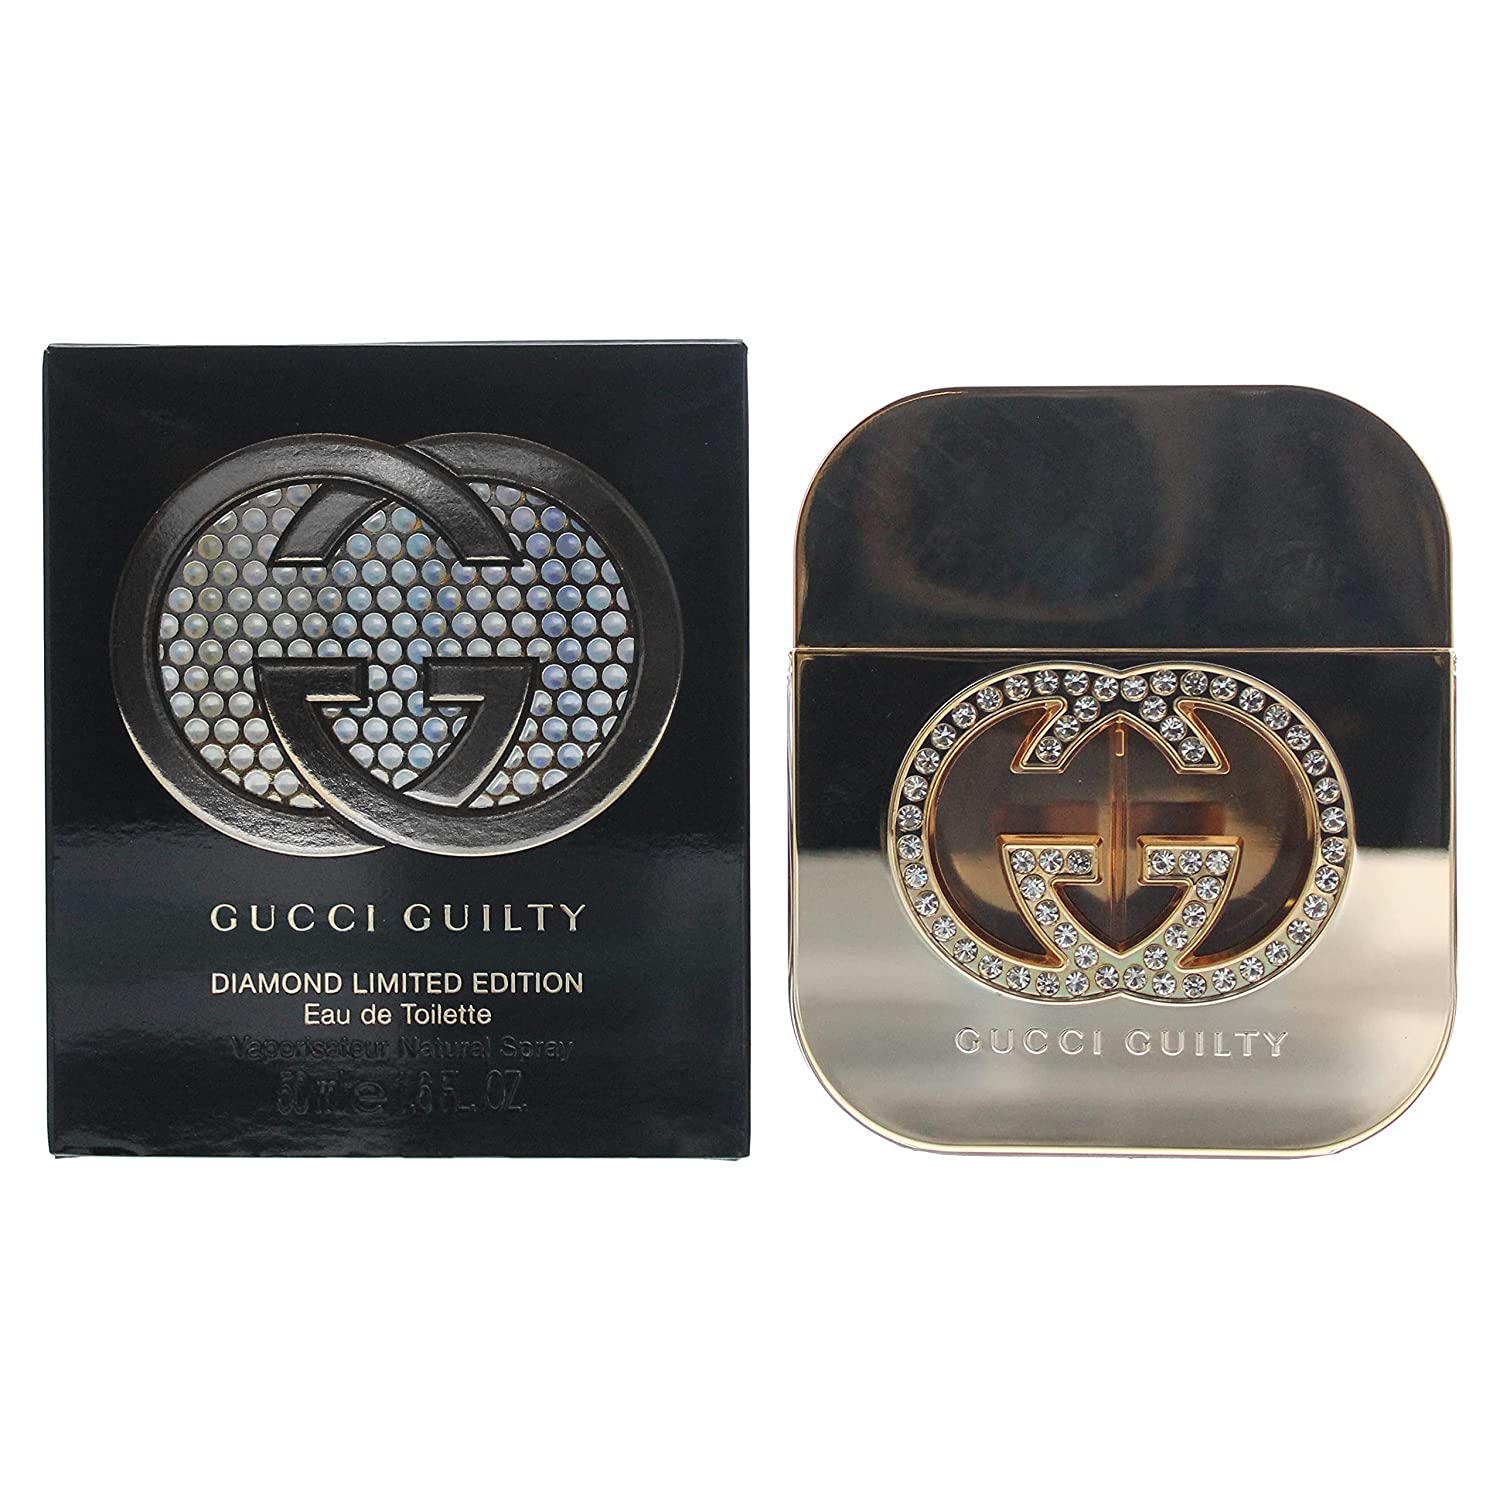 Gucci Guilty Diamond Edition